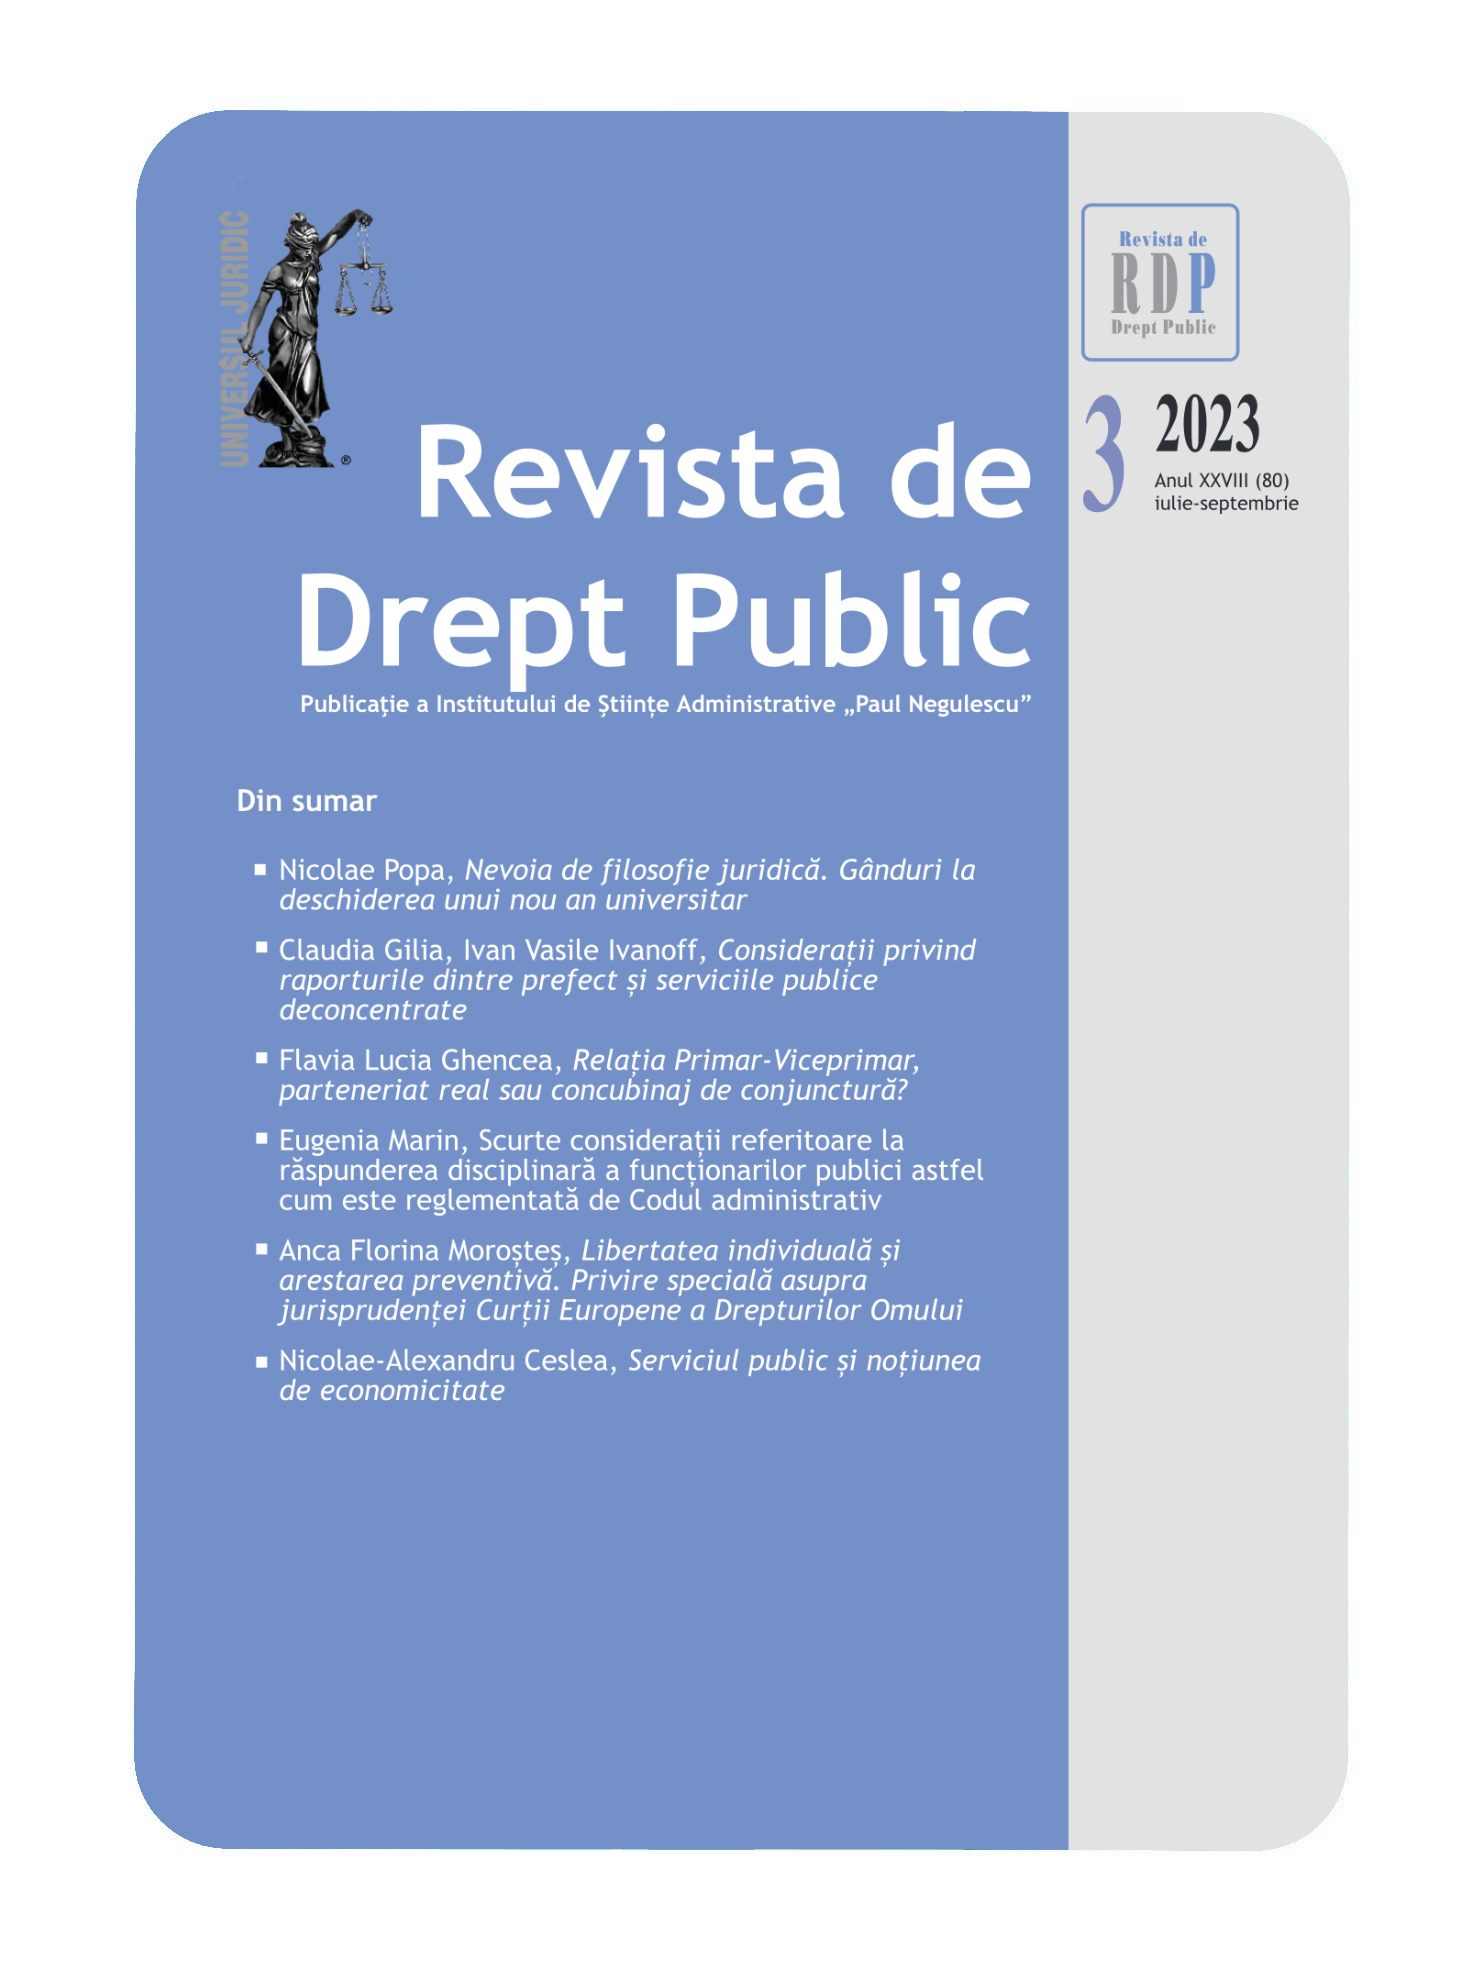 Considerații privind raporturile dintre prefect și serviciile publice deconcentrate